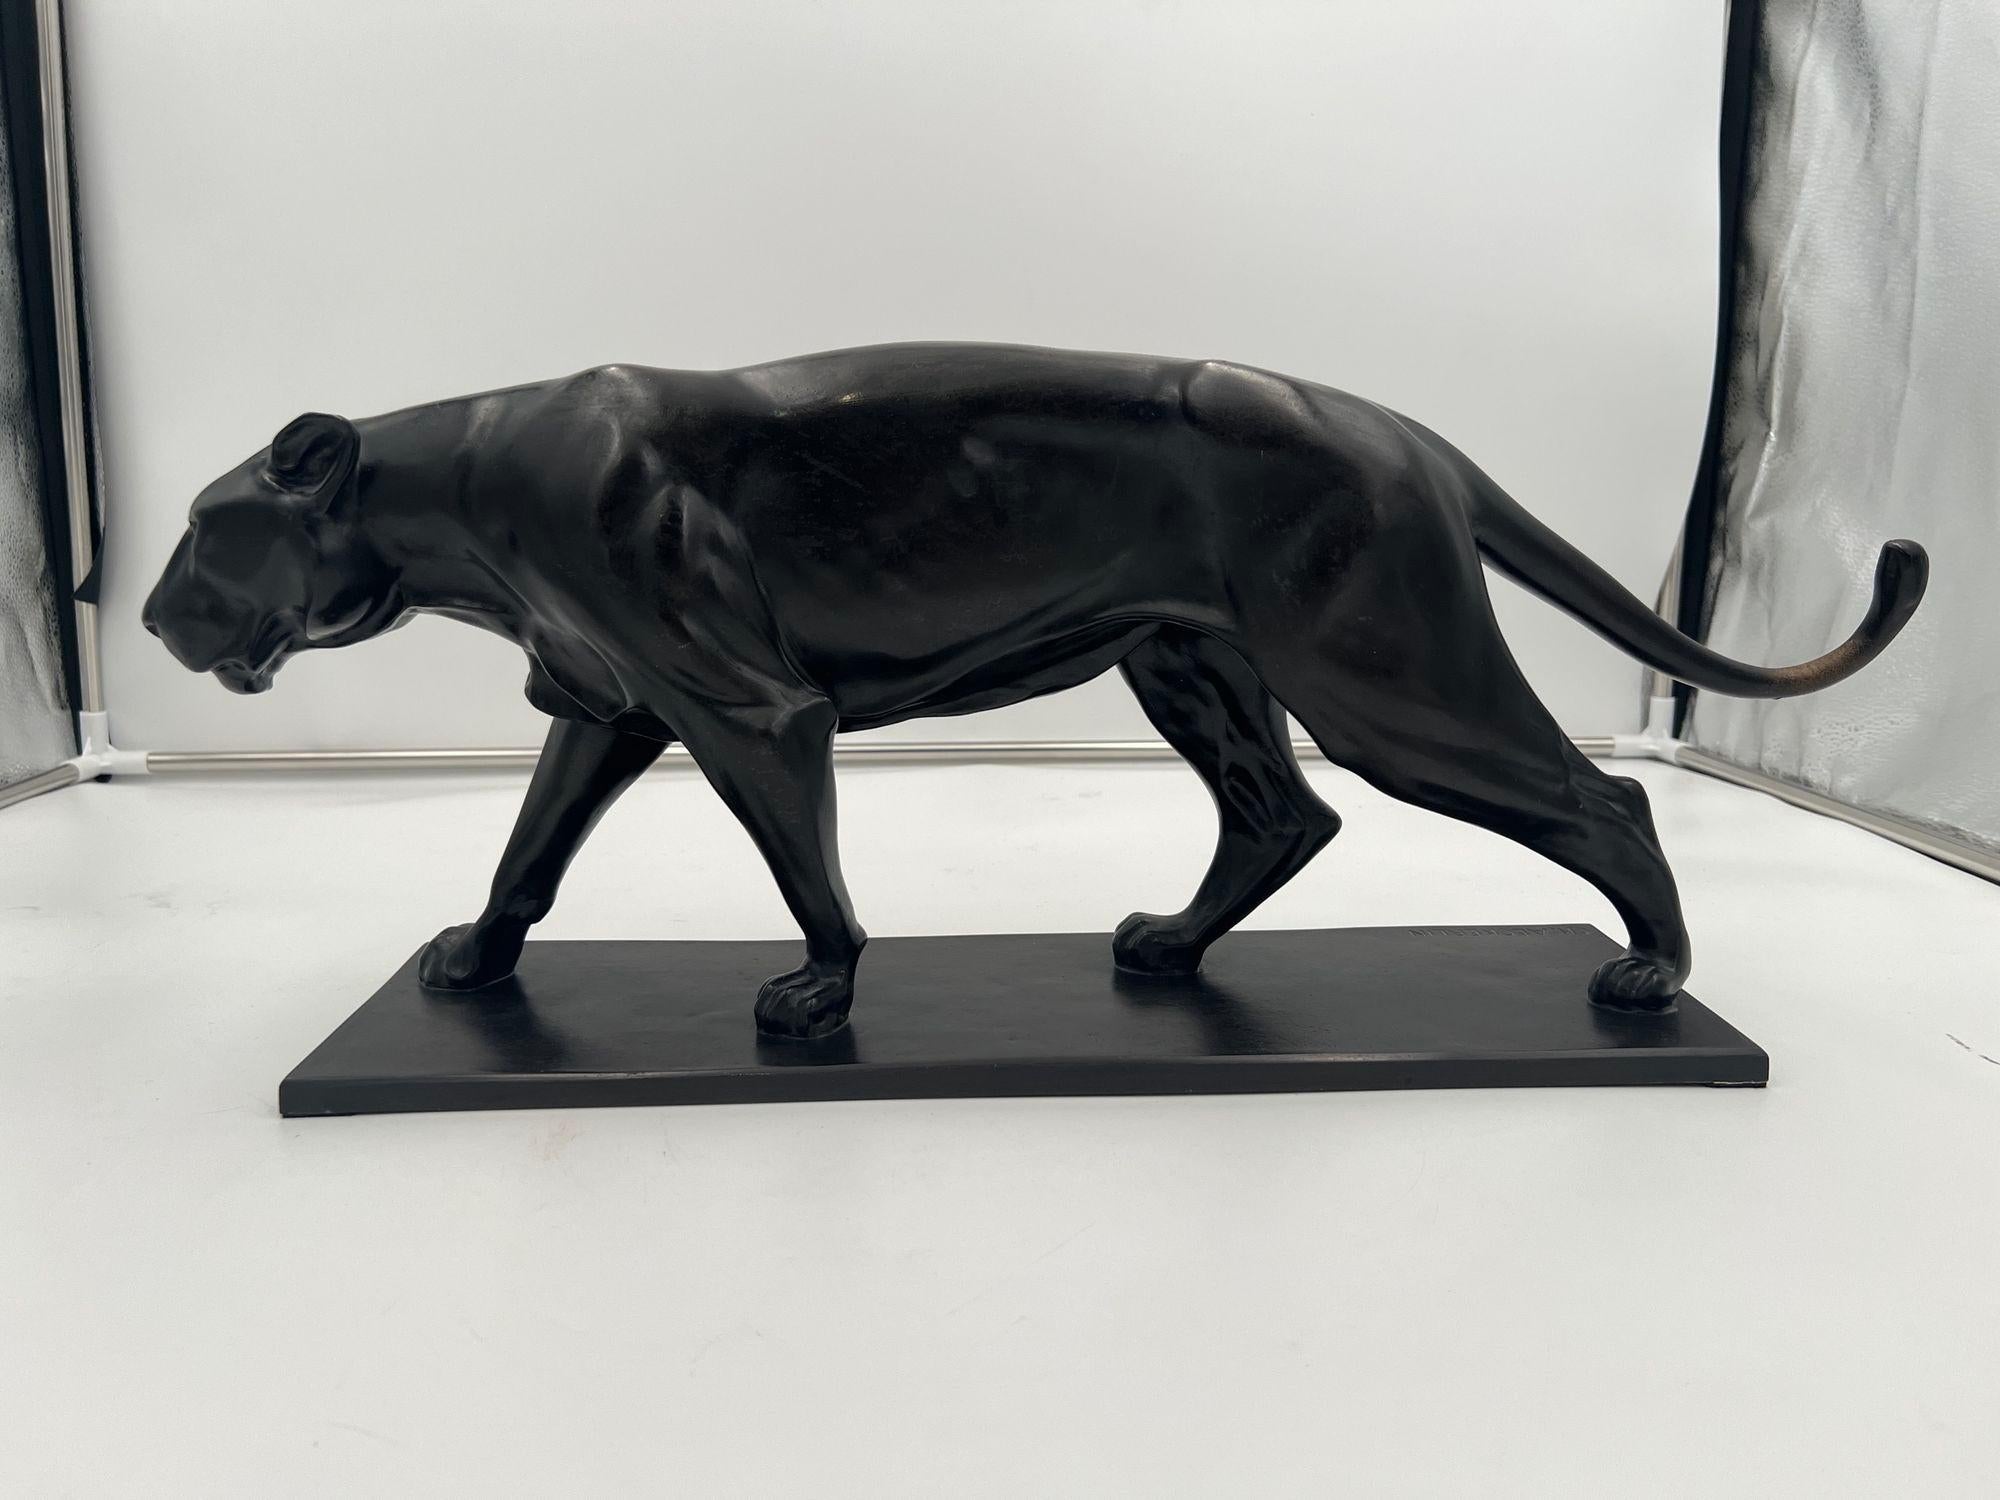 Schöne große Skulptur einer schreitenden Löwin von Christian Aeckerlin (1884 Darmstadt - 1943 Stuttgart)
Bronzeguss mit dunkelbrauner Patina. Steht auf einem rechteckigen Bronzesockel.
Graviert signiert 